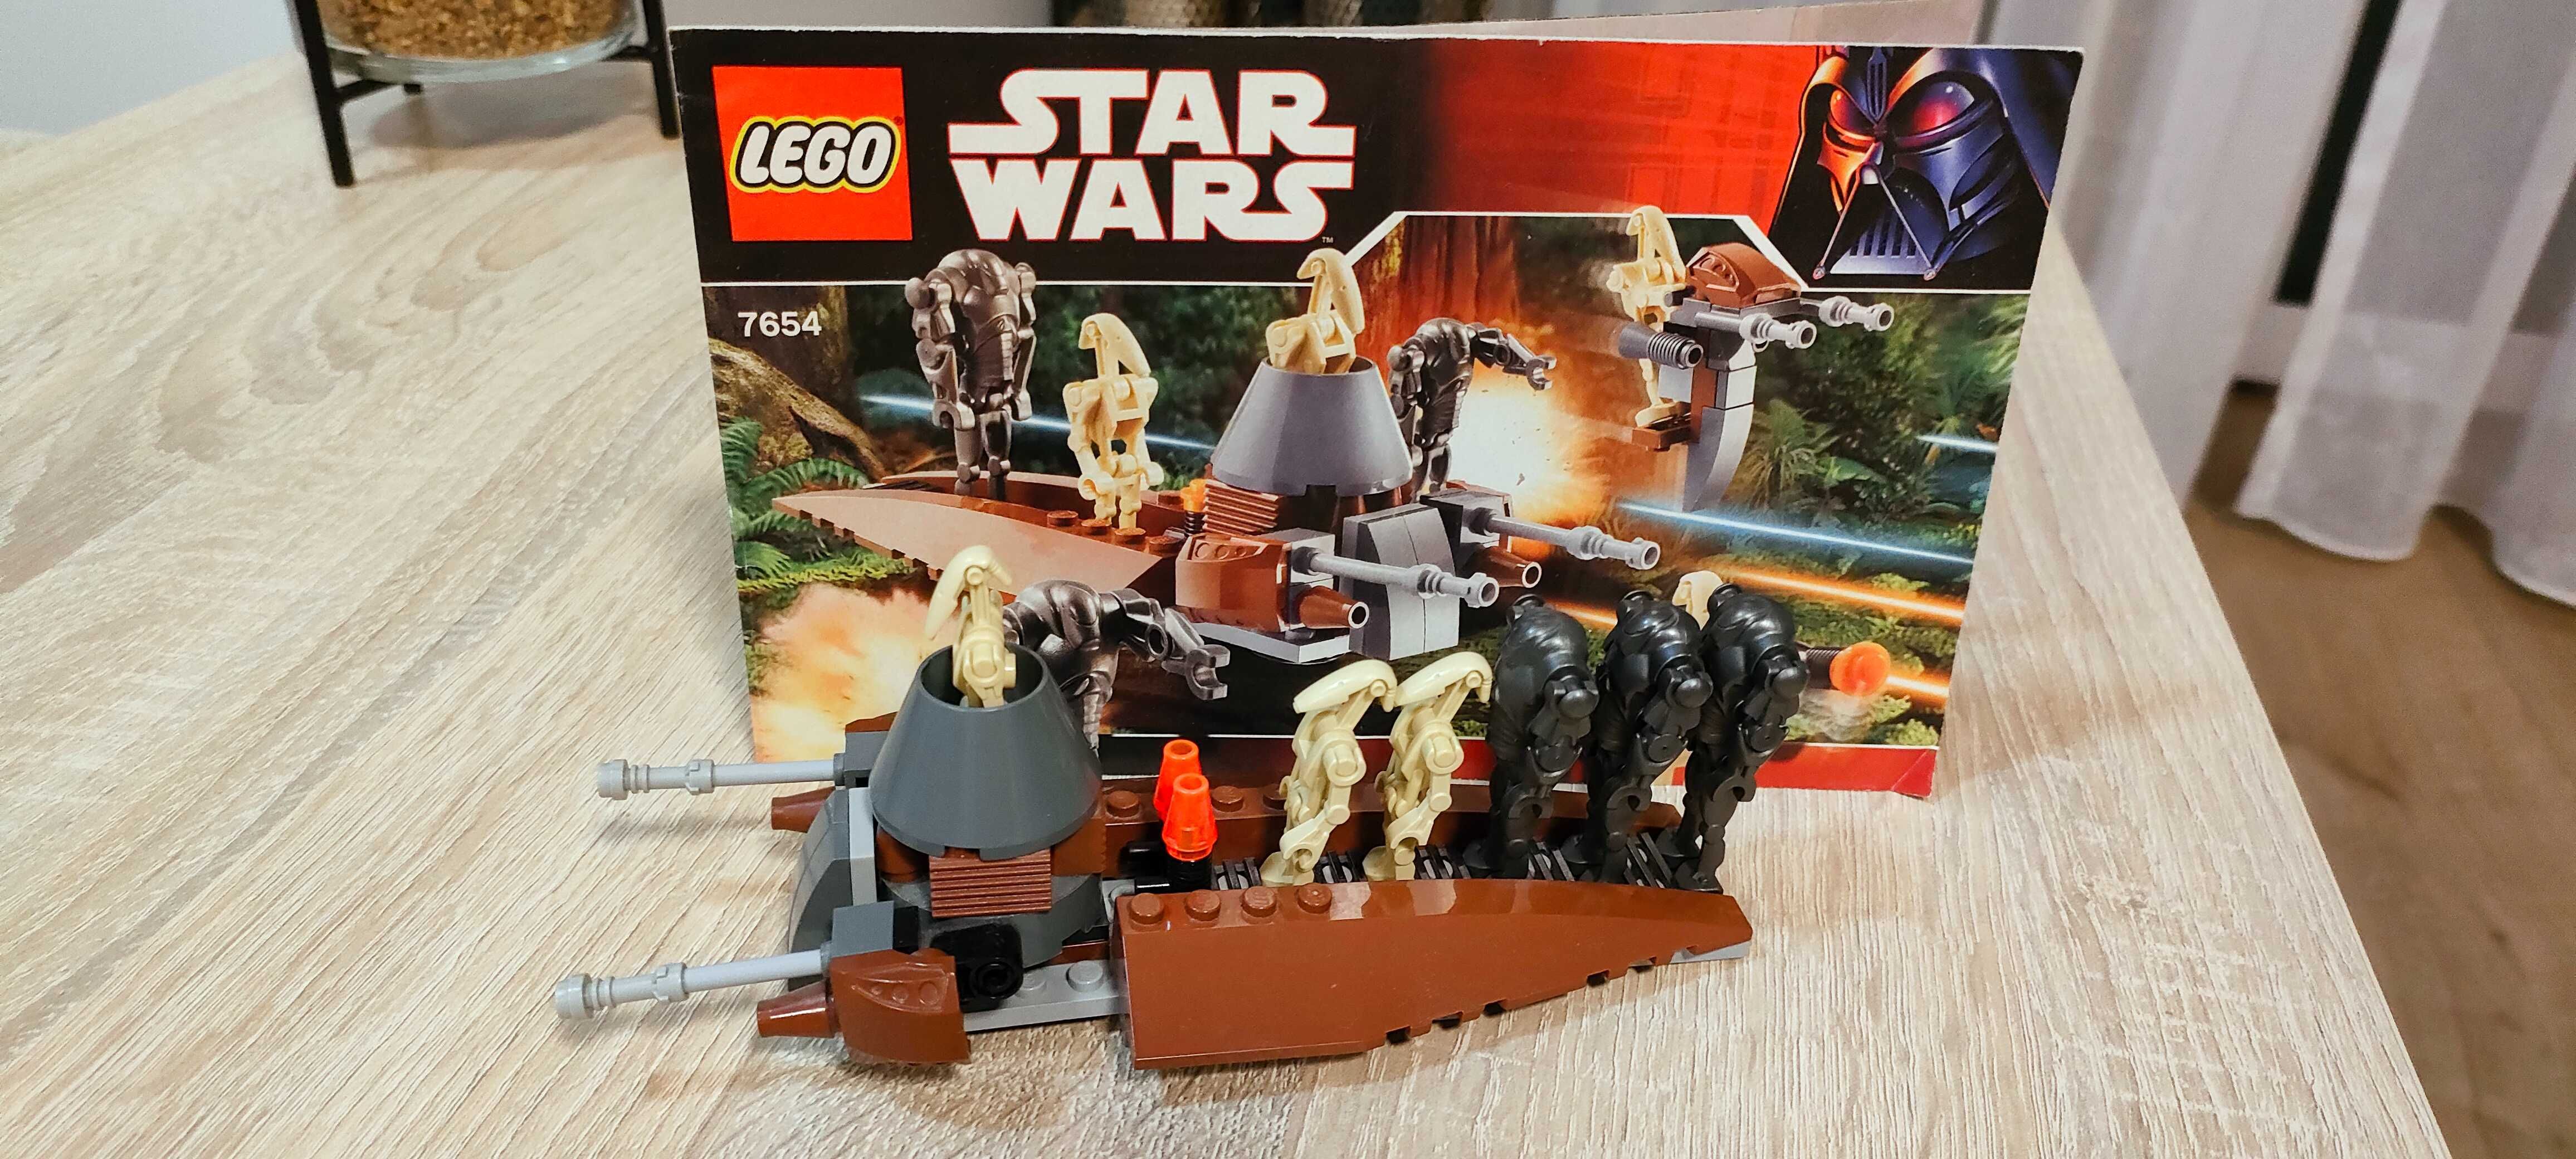 Klocki LEGO Star Wars 7654